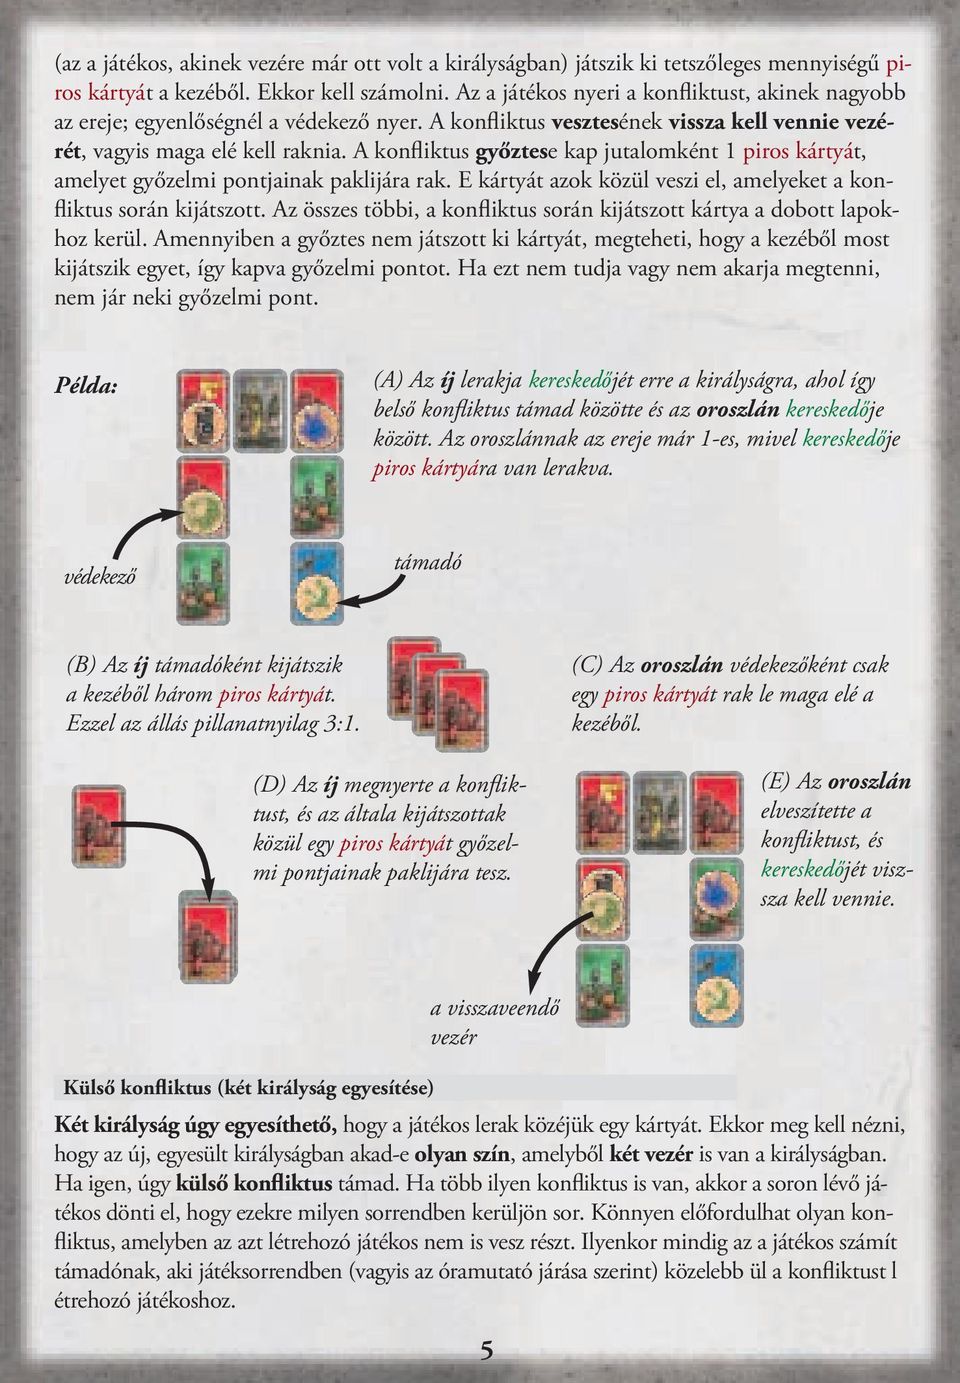 A konfliktus győztese kap jutalomként 1 piros kártyát, amelyet győzelmi pontjainak paklijára rak. E kártyát azok közül veszi el, amelyeket a konfliktus során kijátszott.